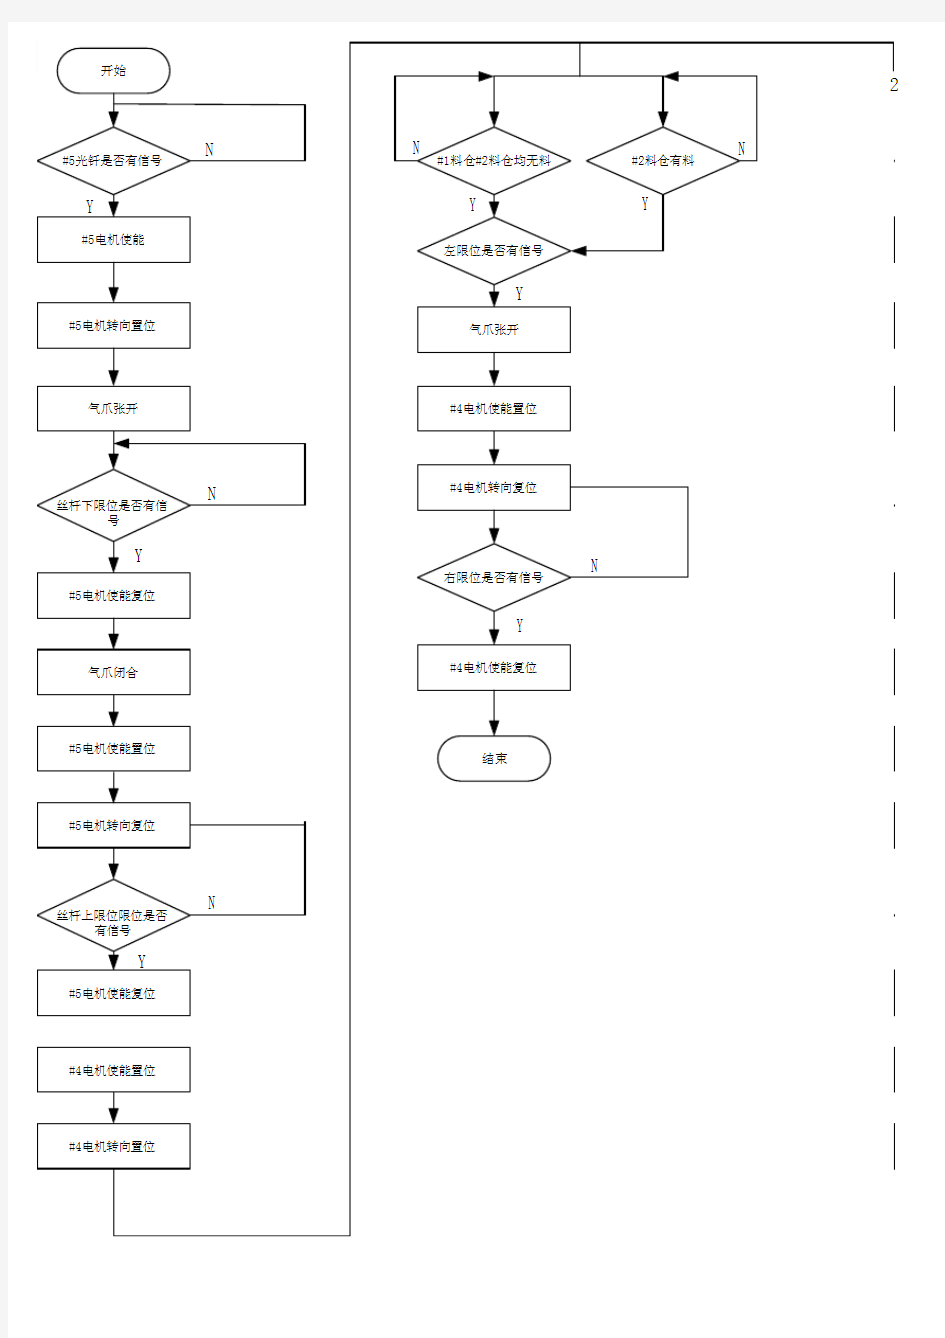 自动化生产线供料部分程序流程图